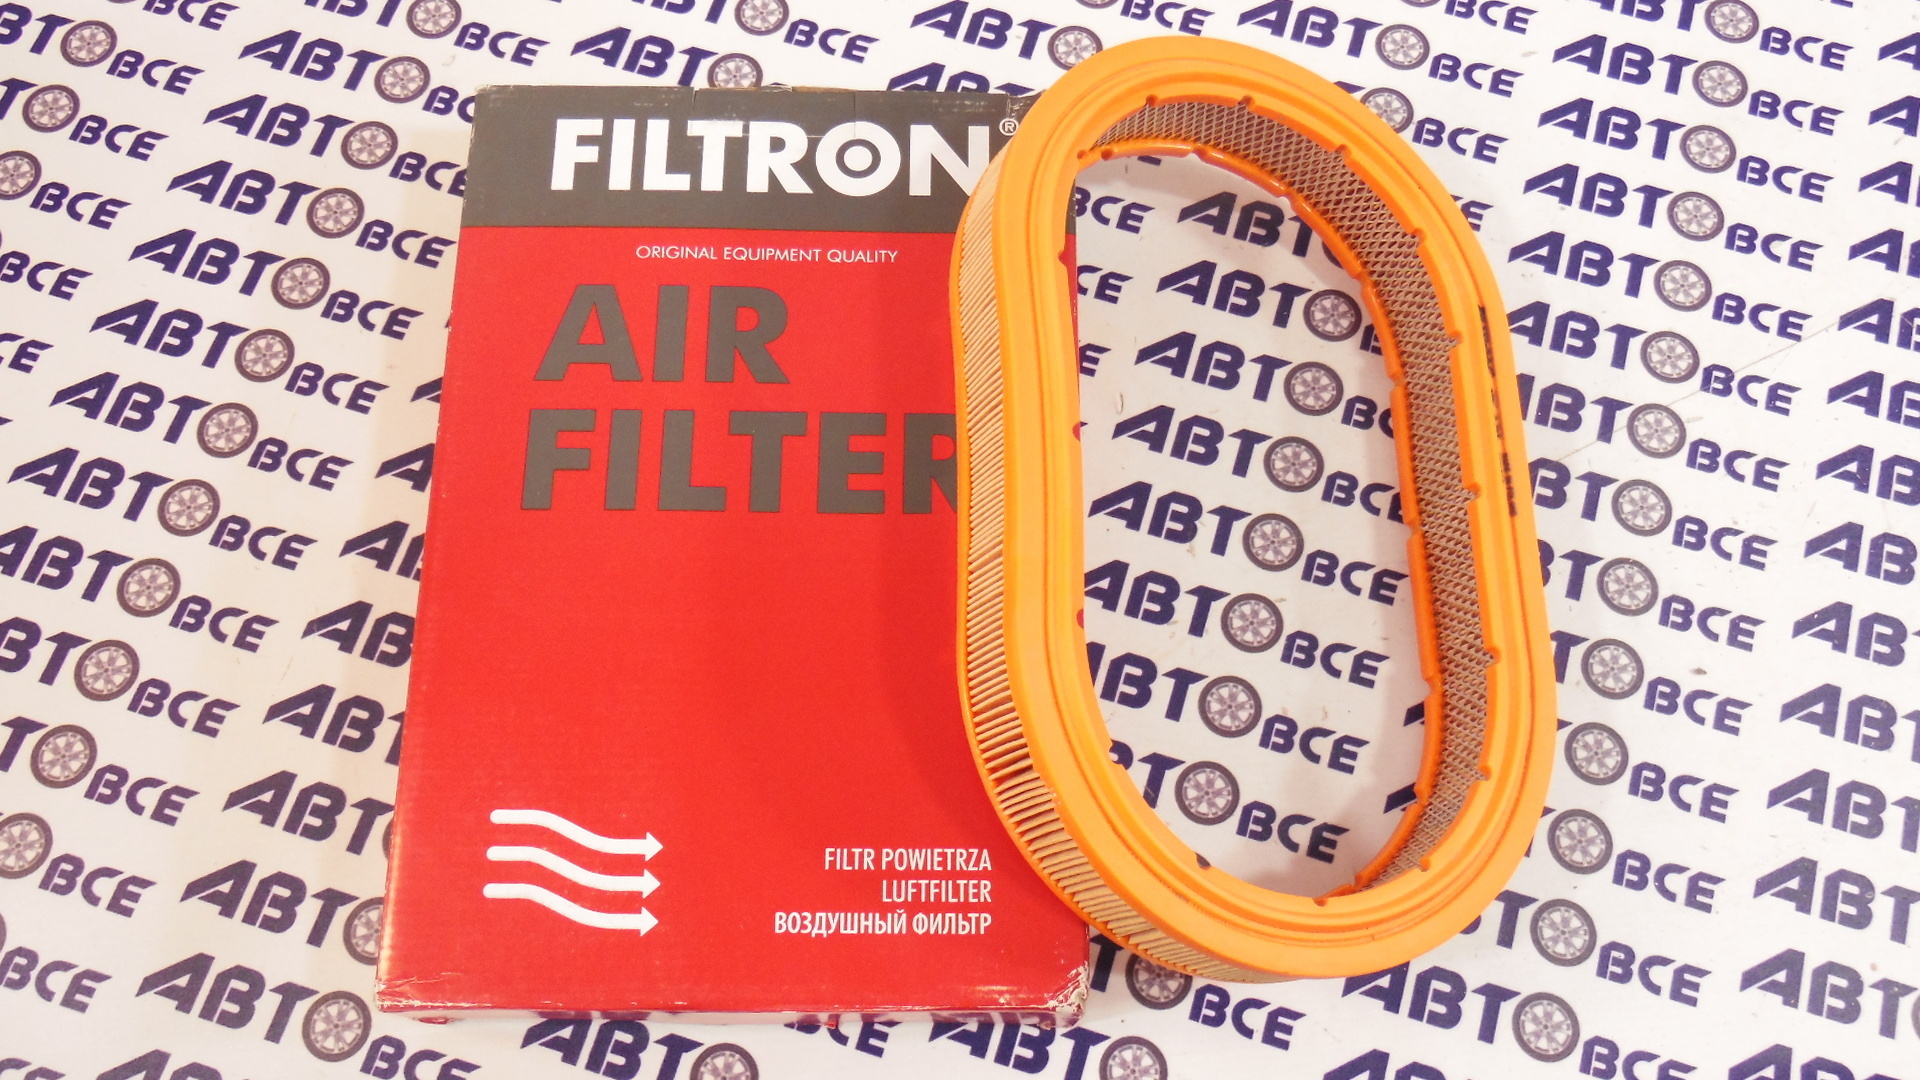 Фильтр воздушный AE220 FILTRON